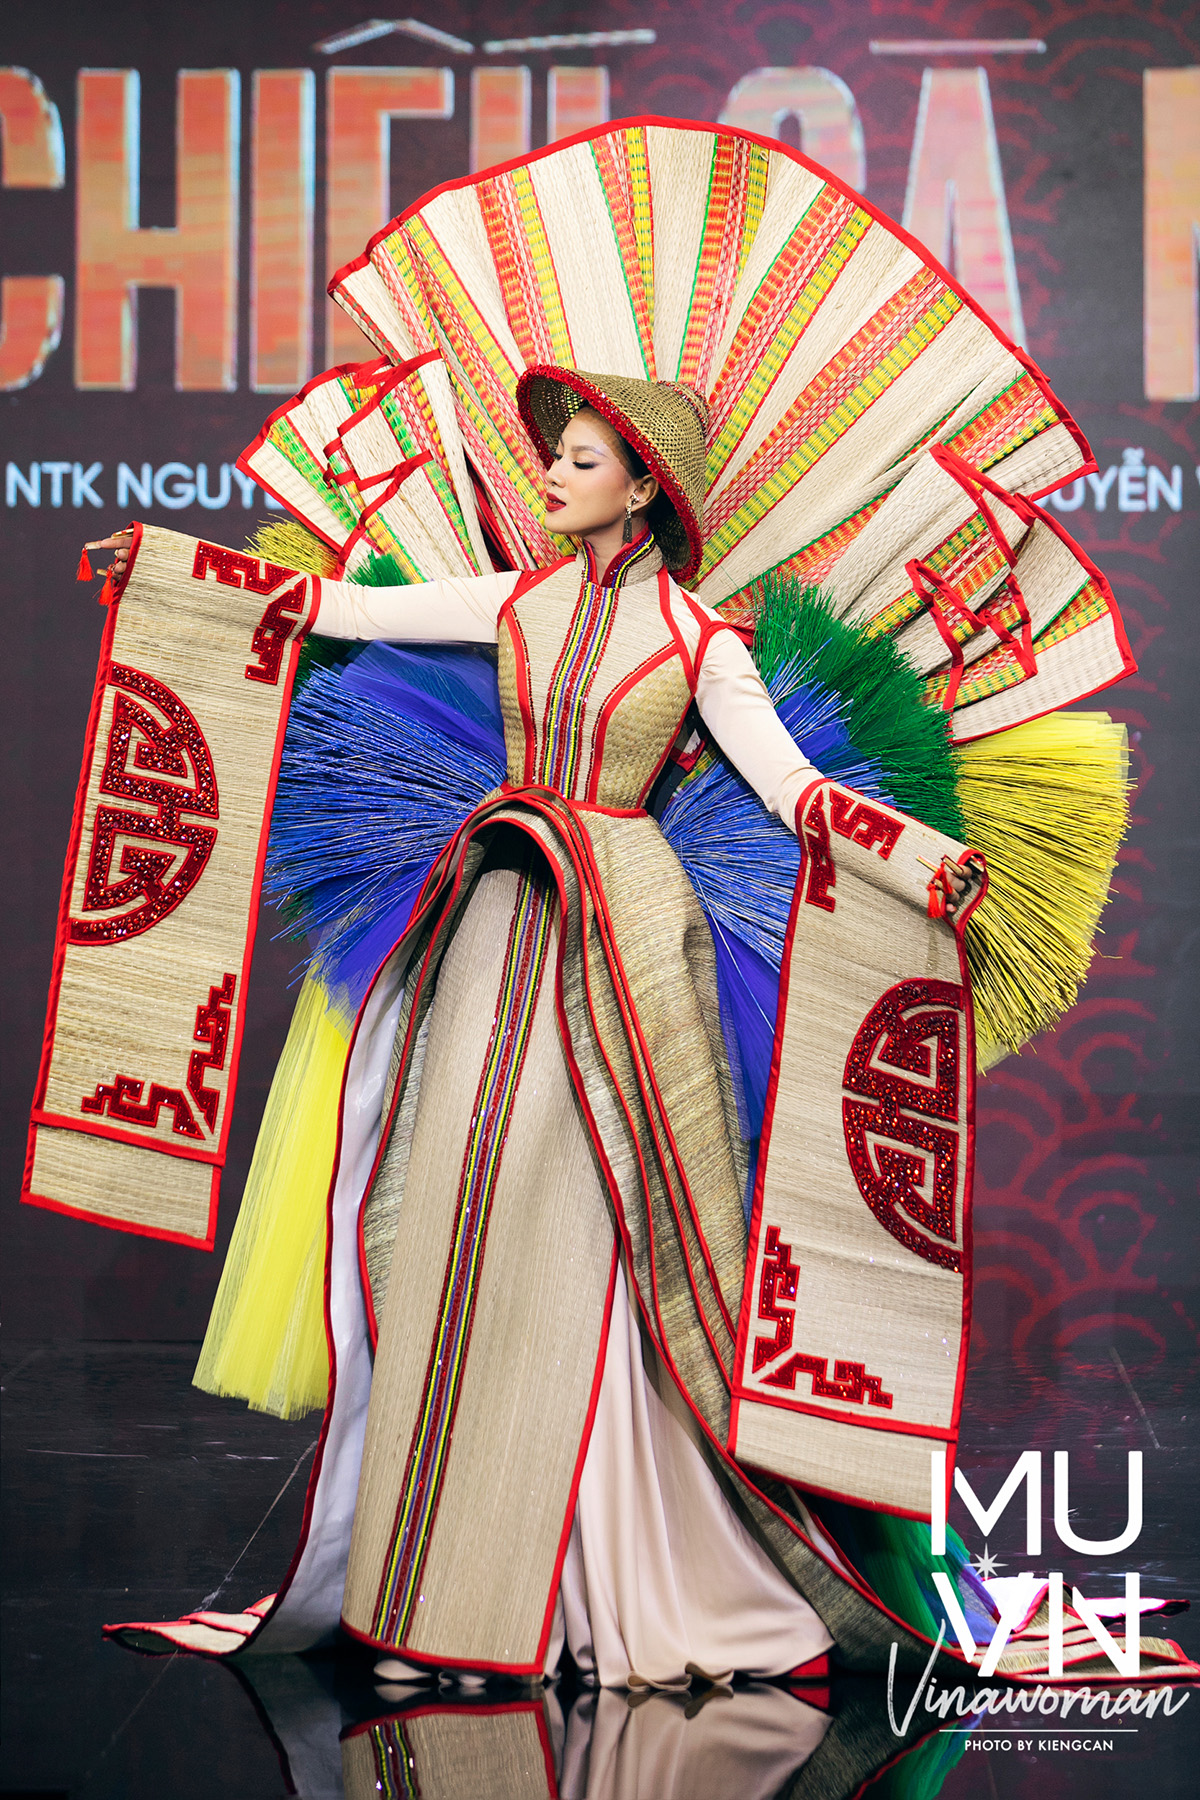 Trang phục dân tộc Việt độc lạ tại các cuộc thi sắc đẹp thế giới ...